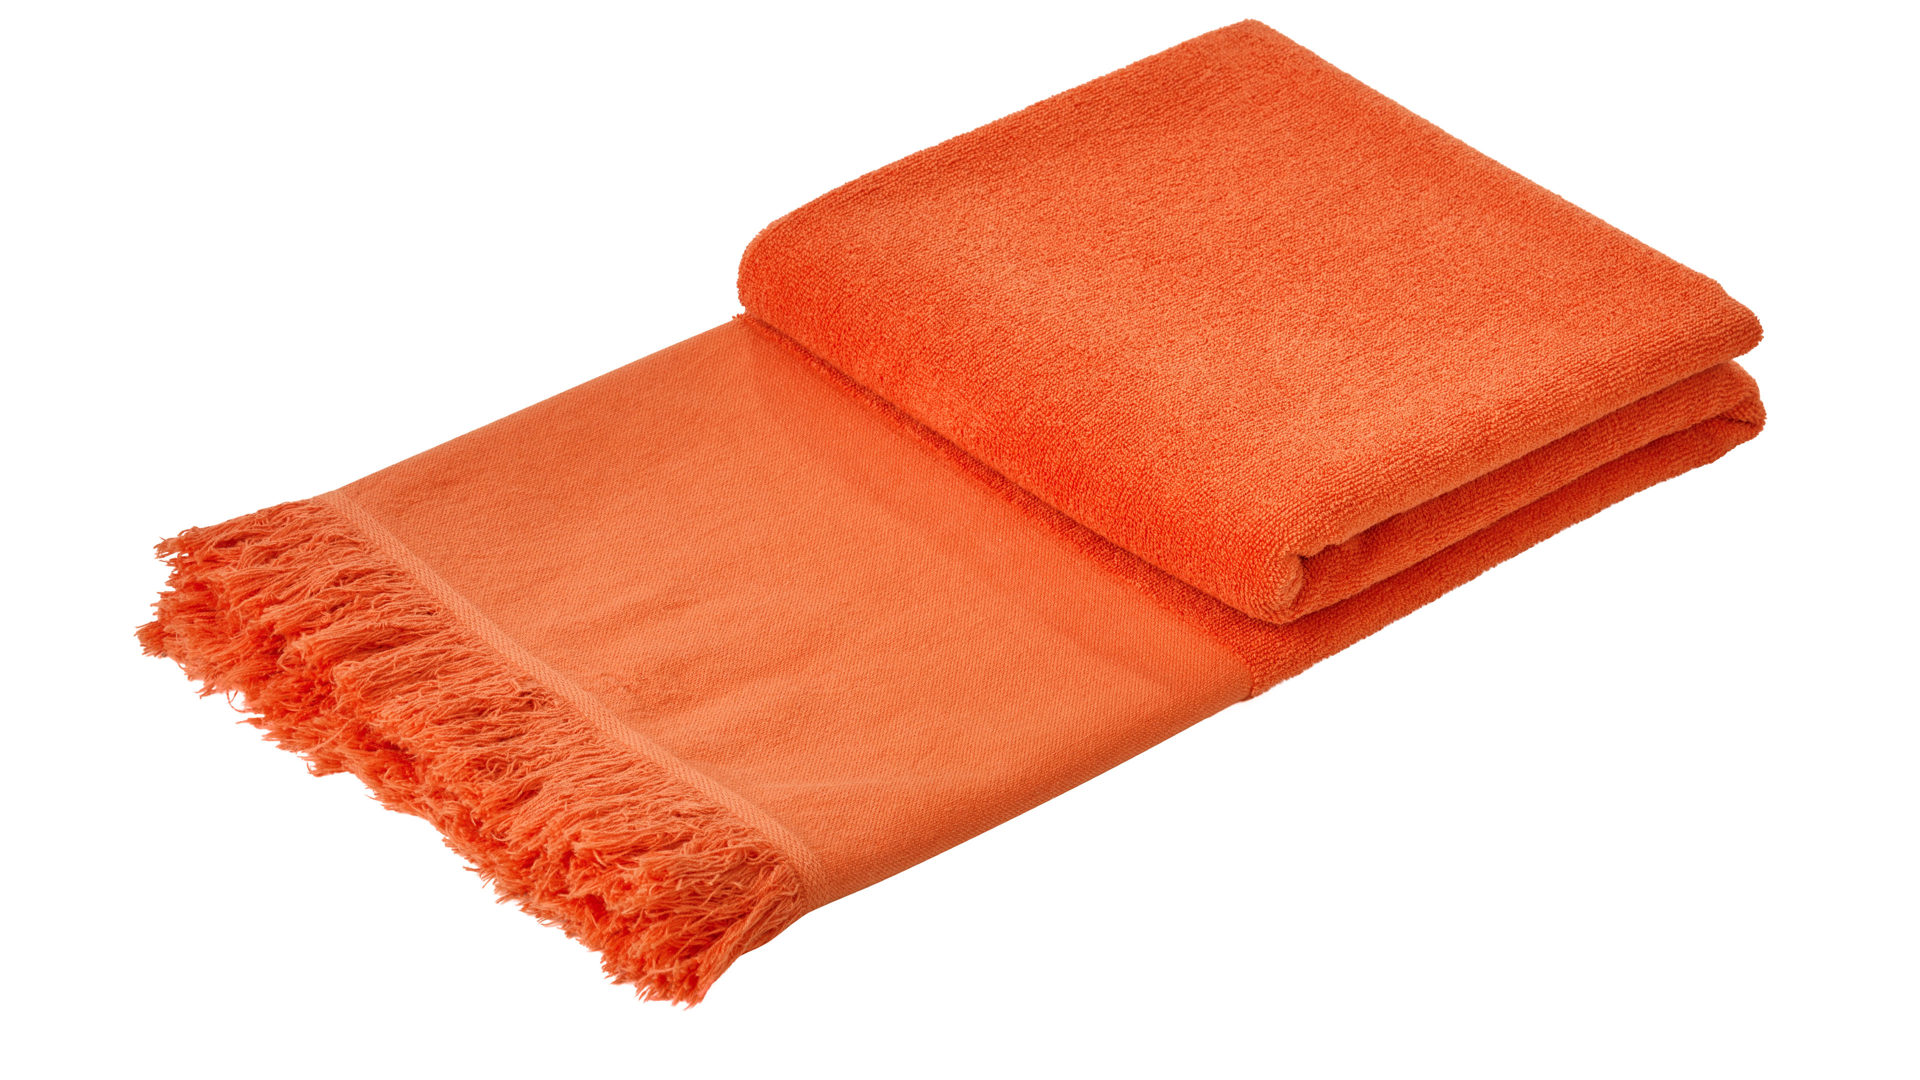 Hamamtuch Done® be different aus Stoff in Orange DONE® Hamamtuch Caprice korallenfarbene Baumwolle – ca. 95 x 180 cm